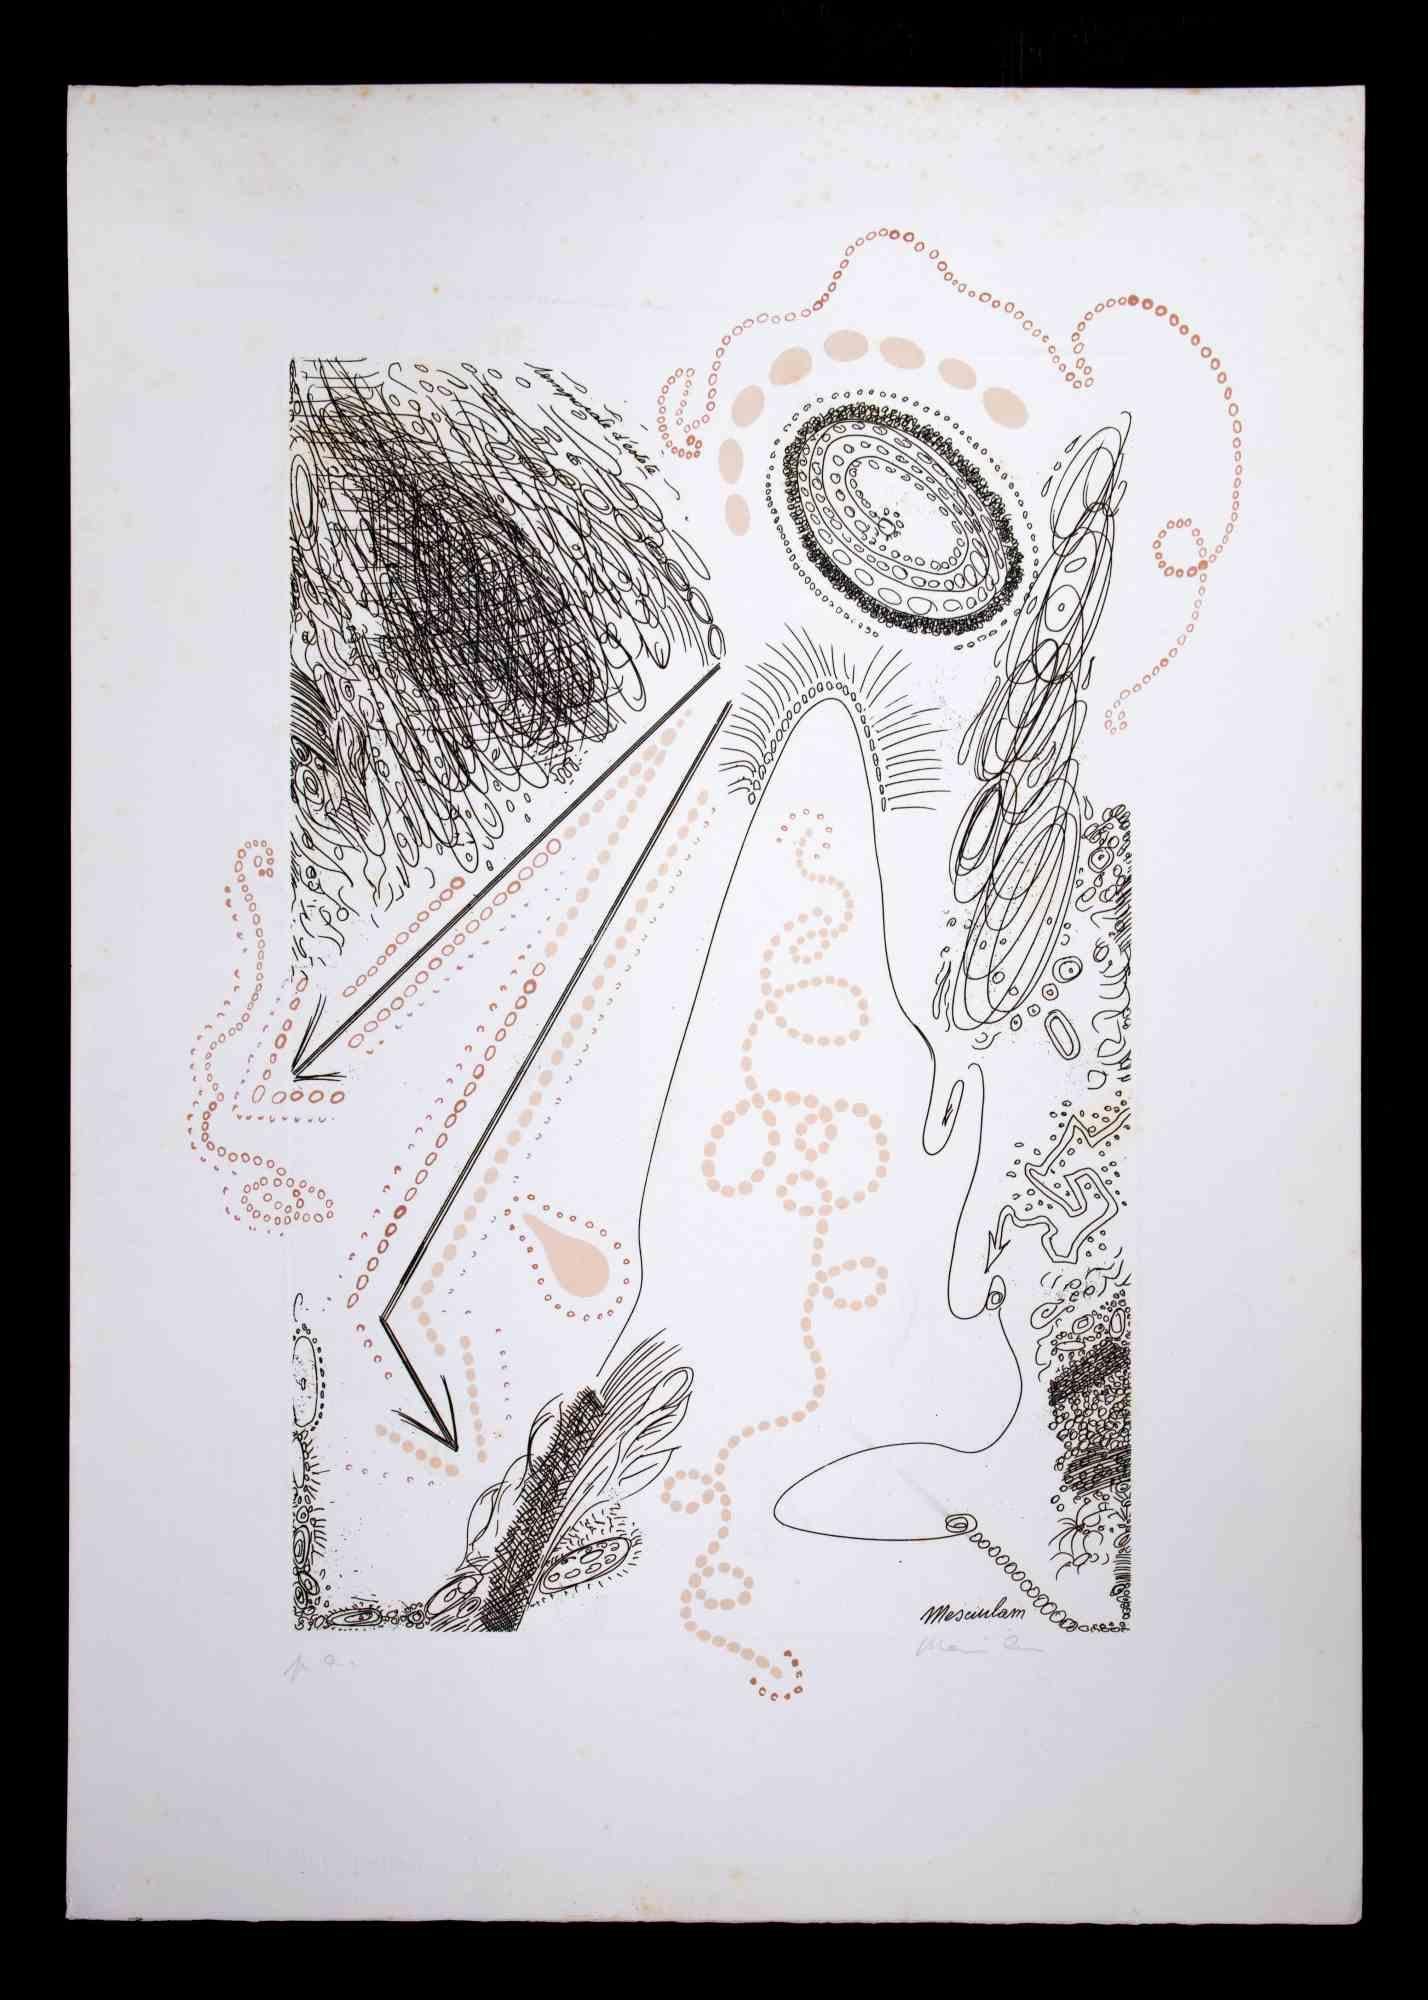 Abstrakte Komposition ist eine Originallithographie von Plinio Mesciulam aus dem Jahr 1973.

Sehr guter Zustand auf einem weißen Karton.

Vom Künstler am unteren Rand handsigniert und nummeriert.

Plinio Mesciulam (23. Dezember 1926 - 19. Mai 2021)